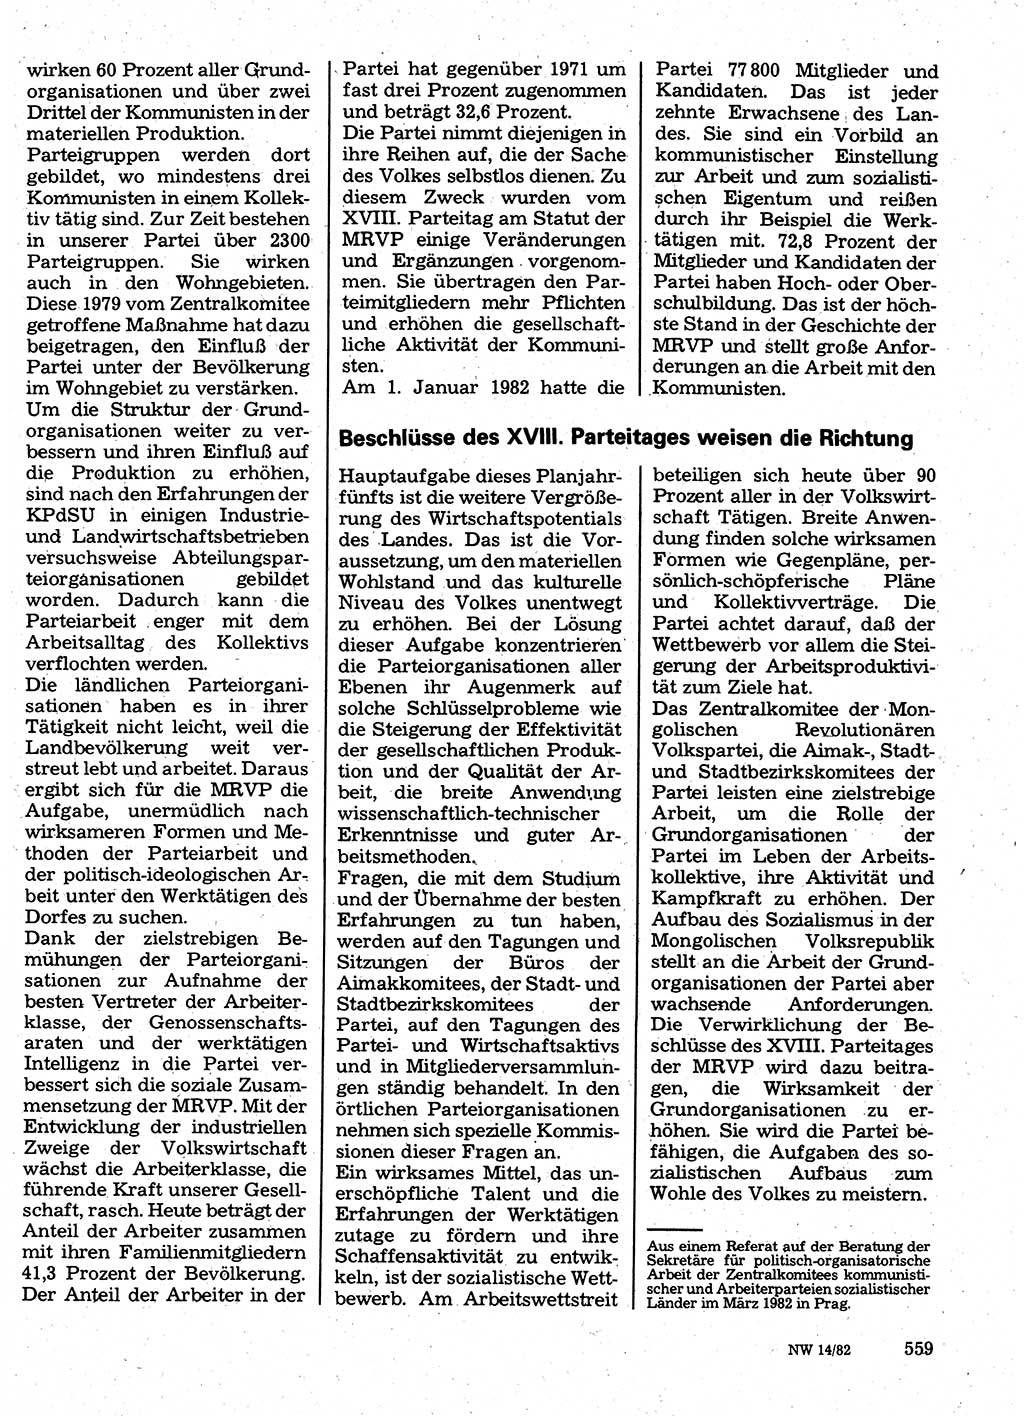 Neuer Weg (NW), Organ des Zentralkomitees (ZK) der SED (Sozialistische Einheitspartei Deutschlands) für Fragen des Parteilebens, 37. Jahrgang [Deutsche Demokratische Republik (DDR)] 1982, Seite 559 (NW ZK SED DDR 1982, S. 559)